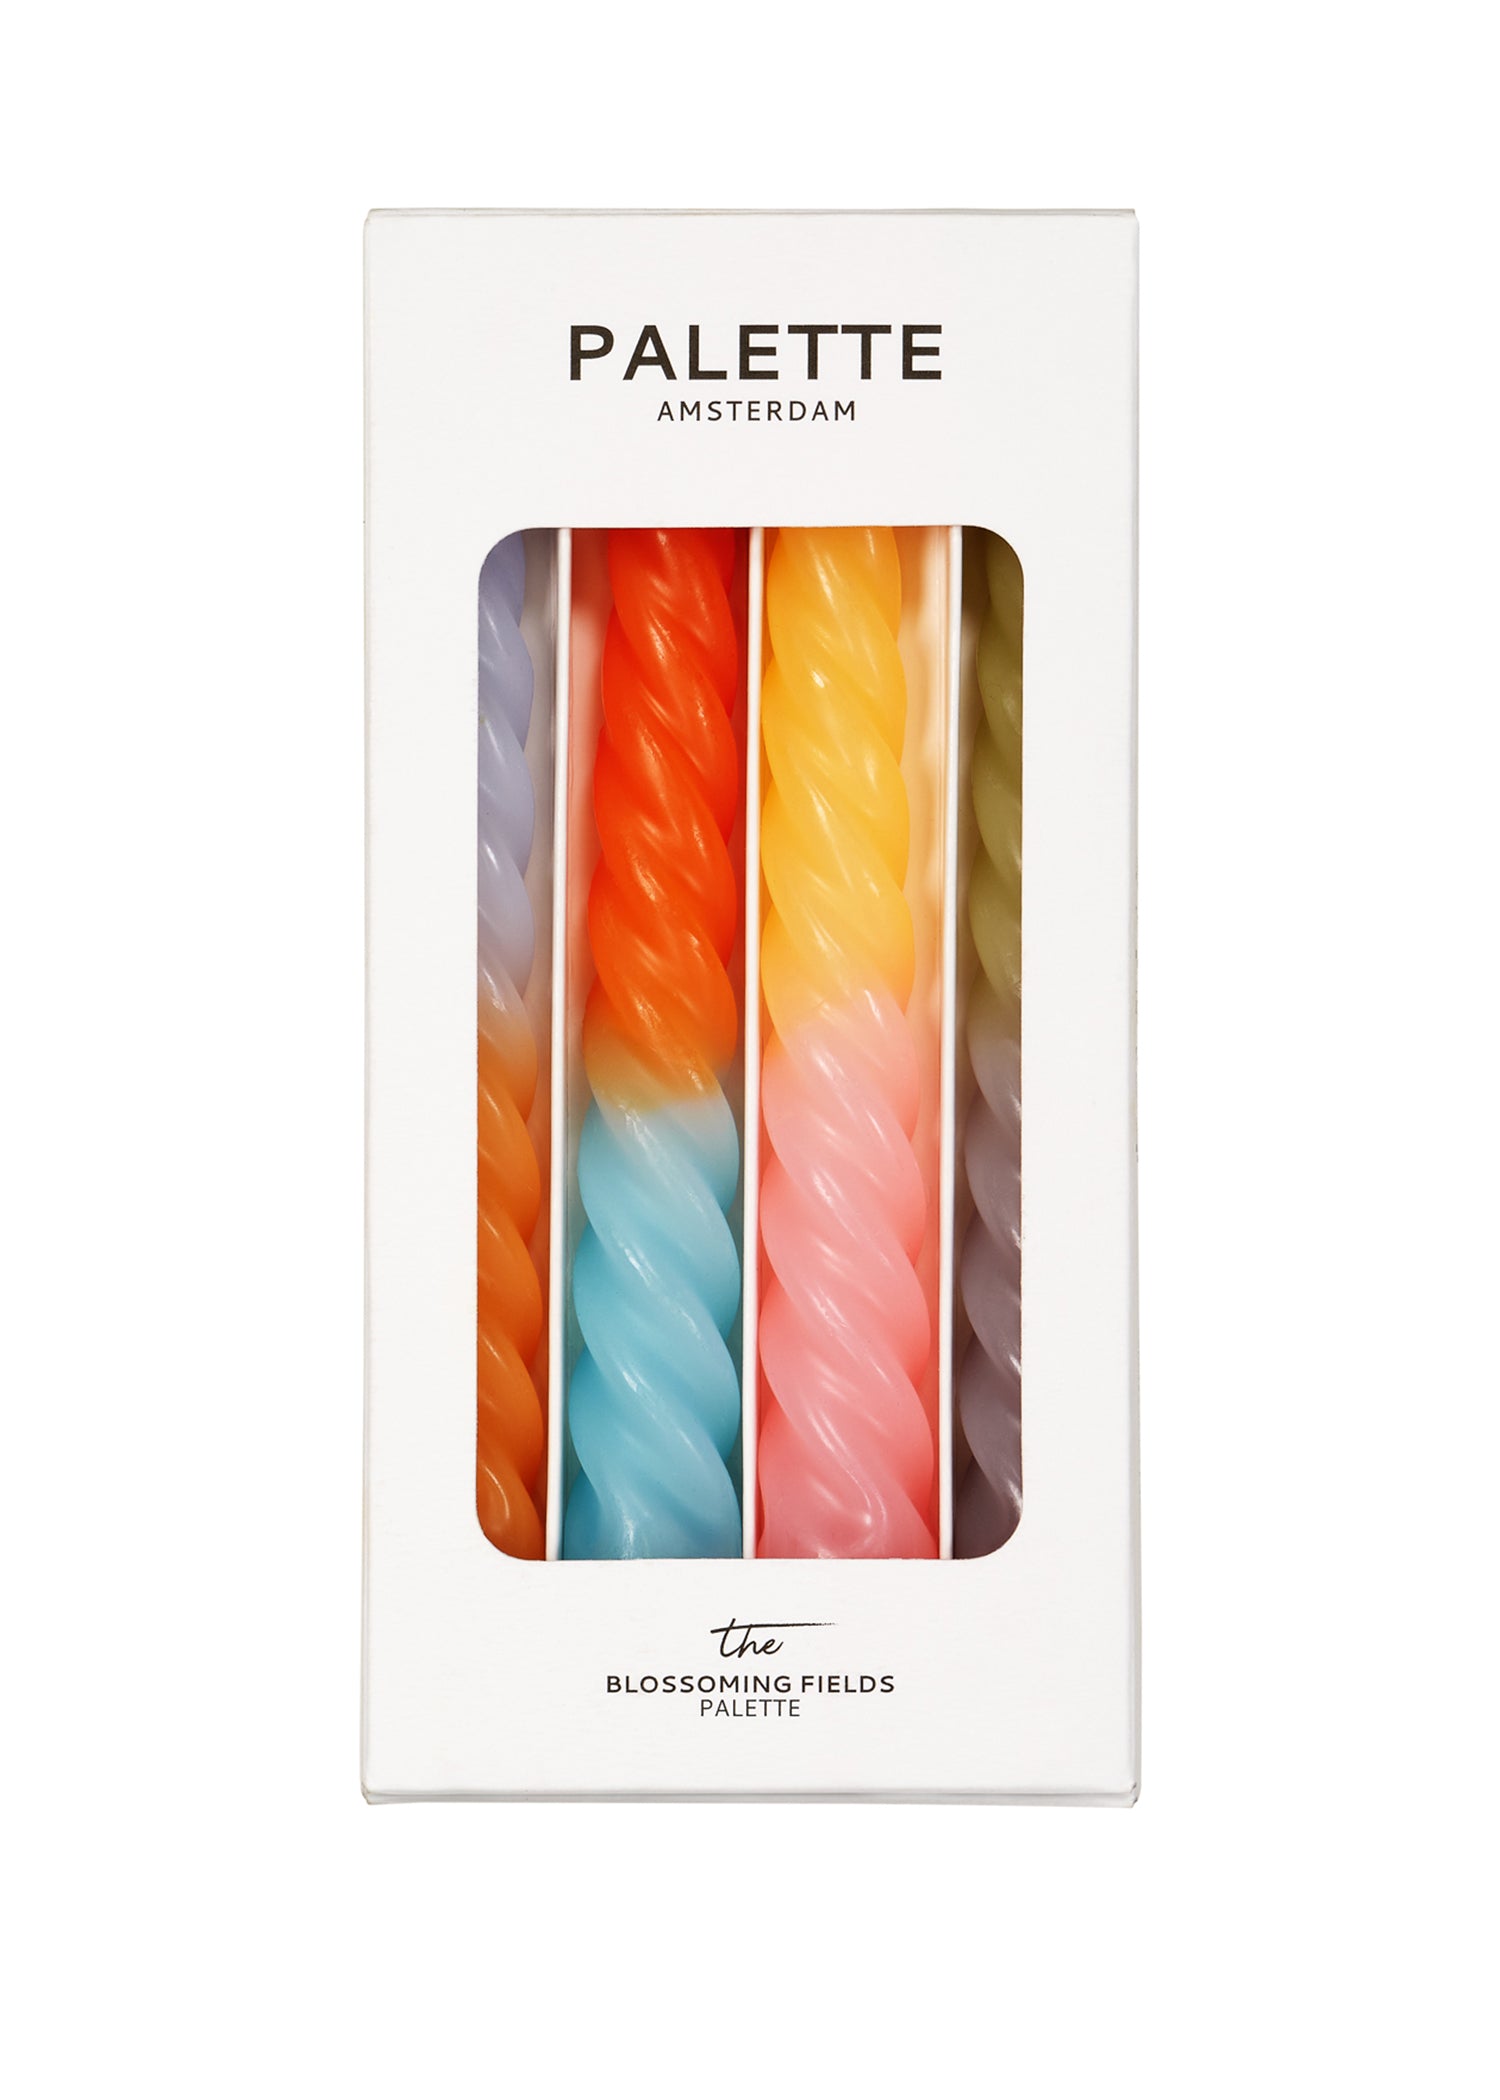 Kleurrijke gedraaide twist- of spiraal kaarsen van het merk Palette Amsterdam